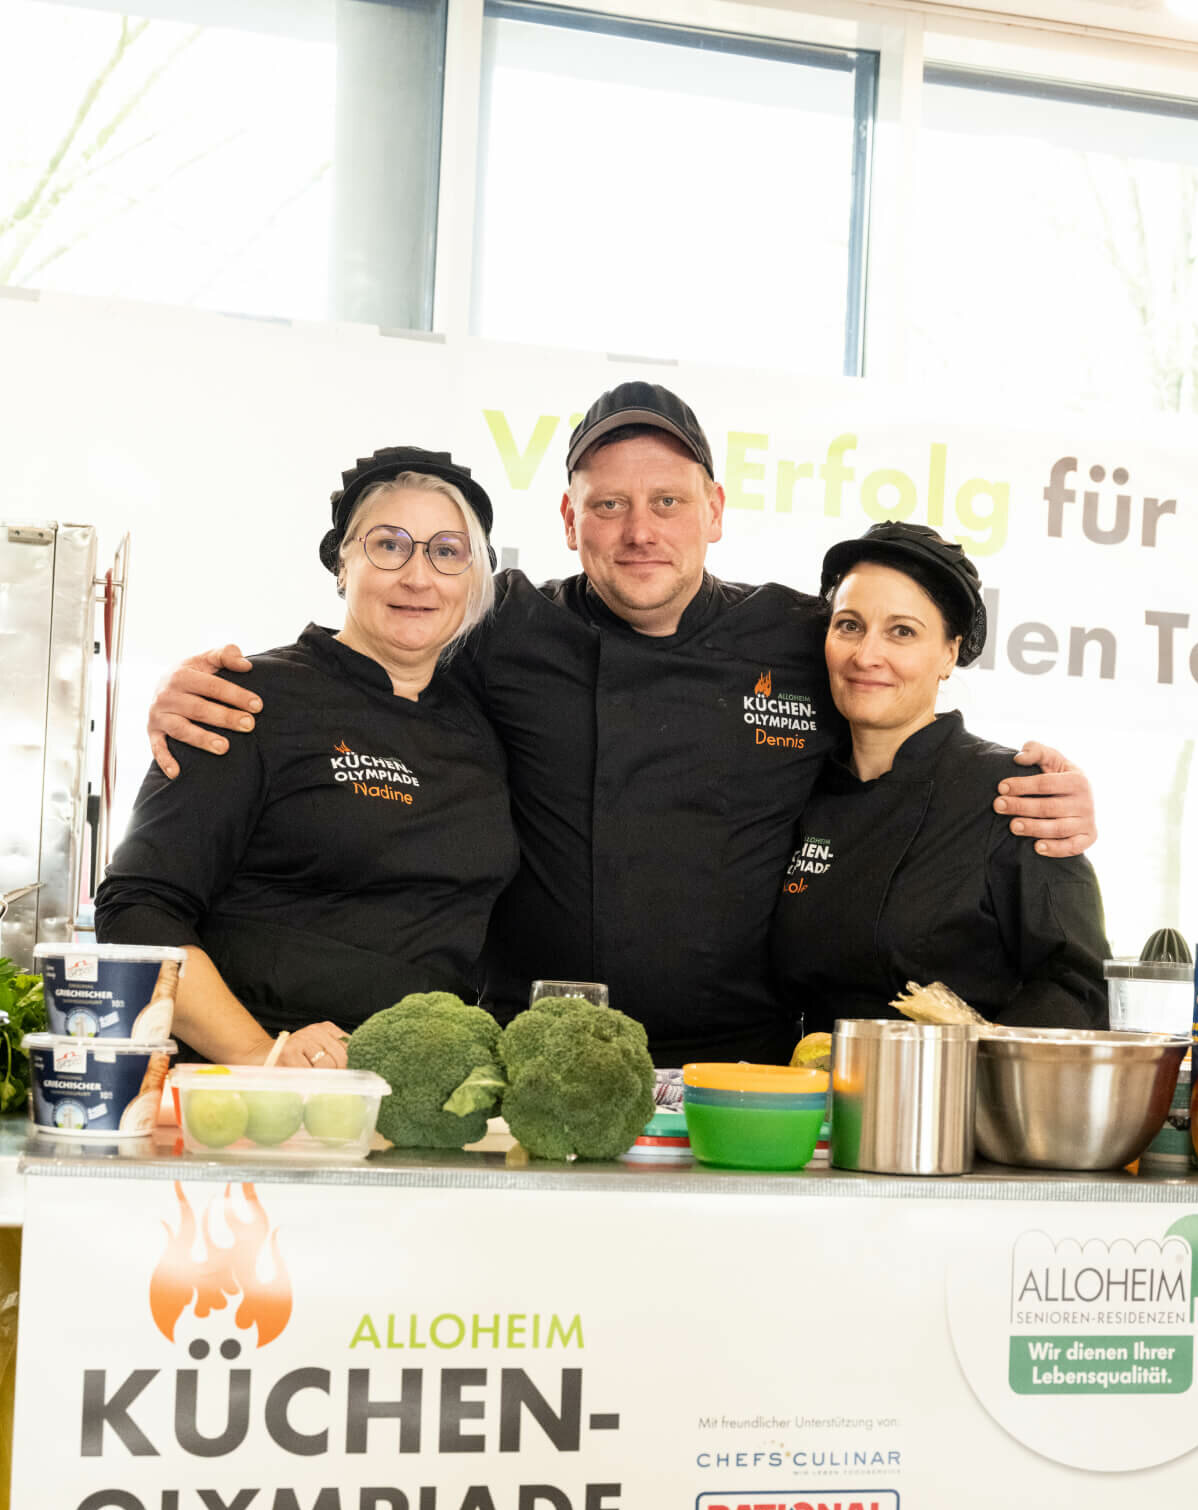 Team "King and Queens" aus Helmstedt bei der Alloheim Küchenolympiade